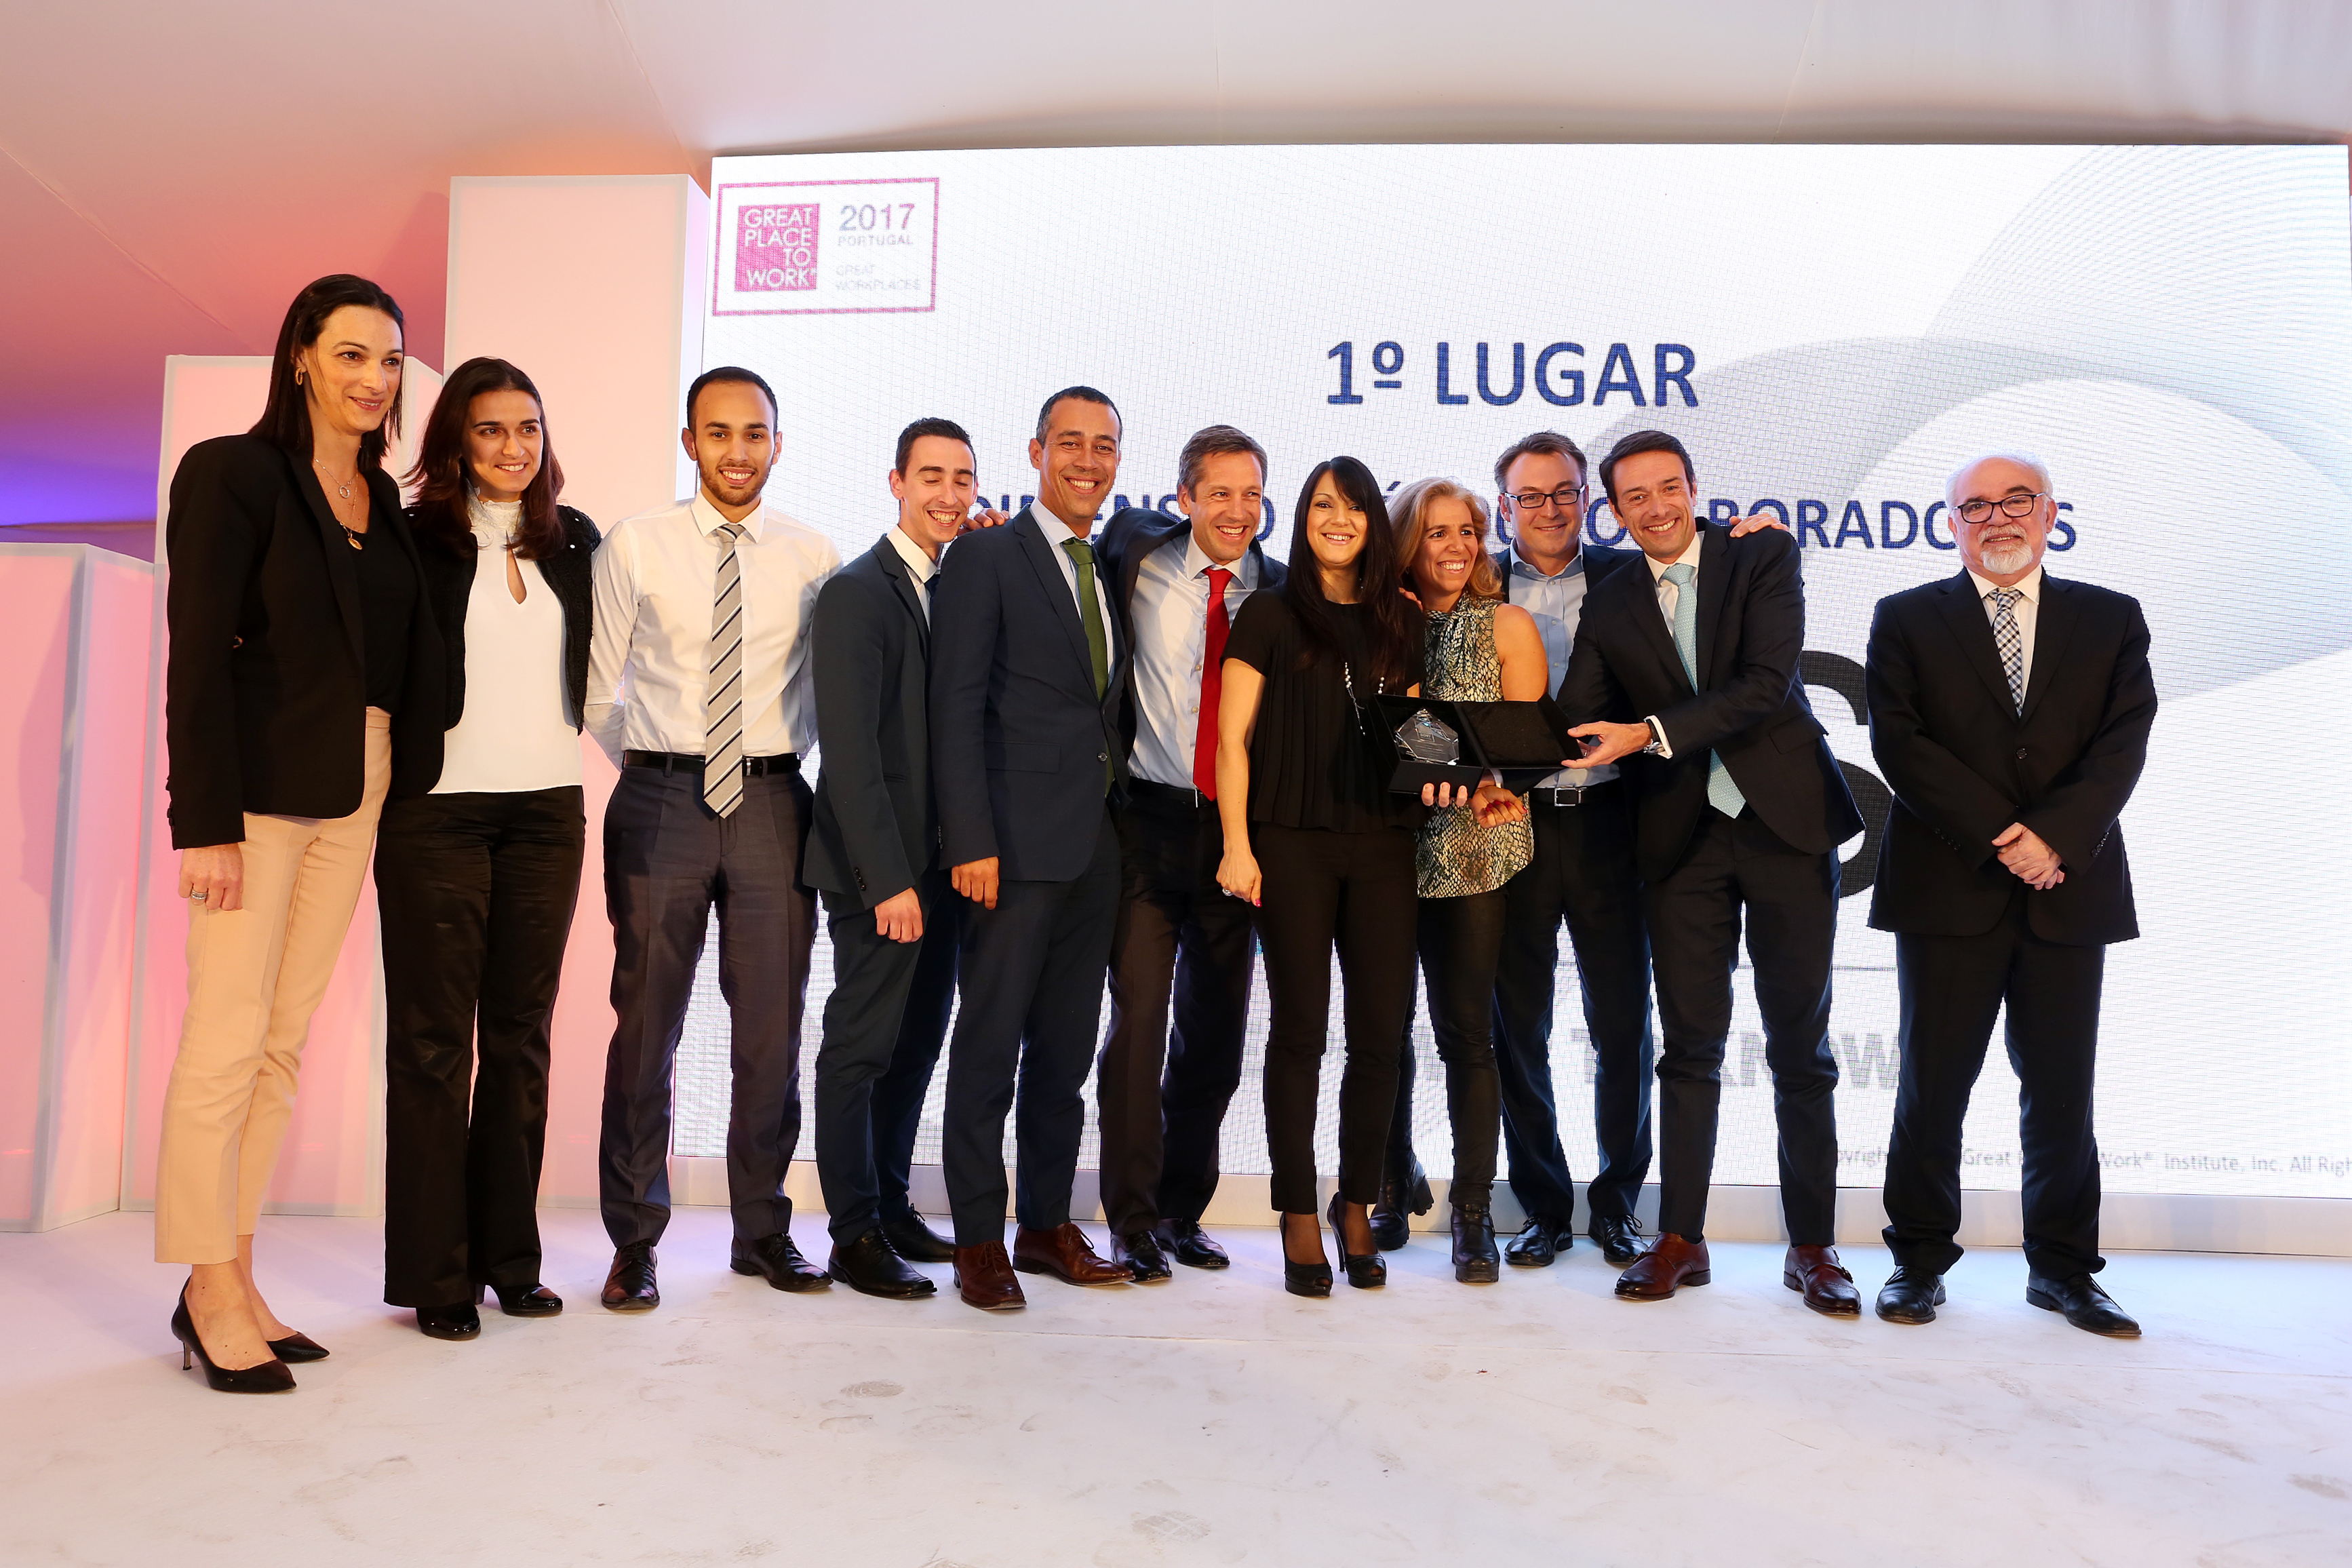 SAS Portugal volta a ganhar prémio "Great Place to Work"